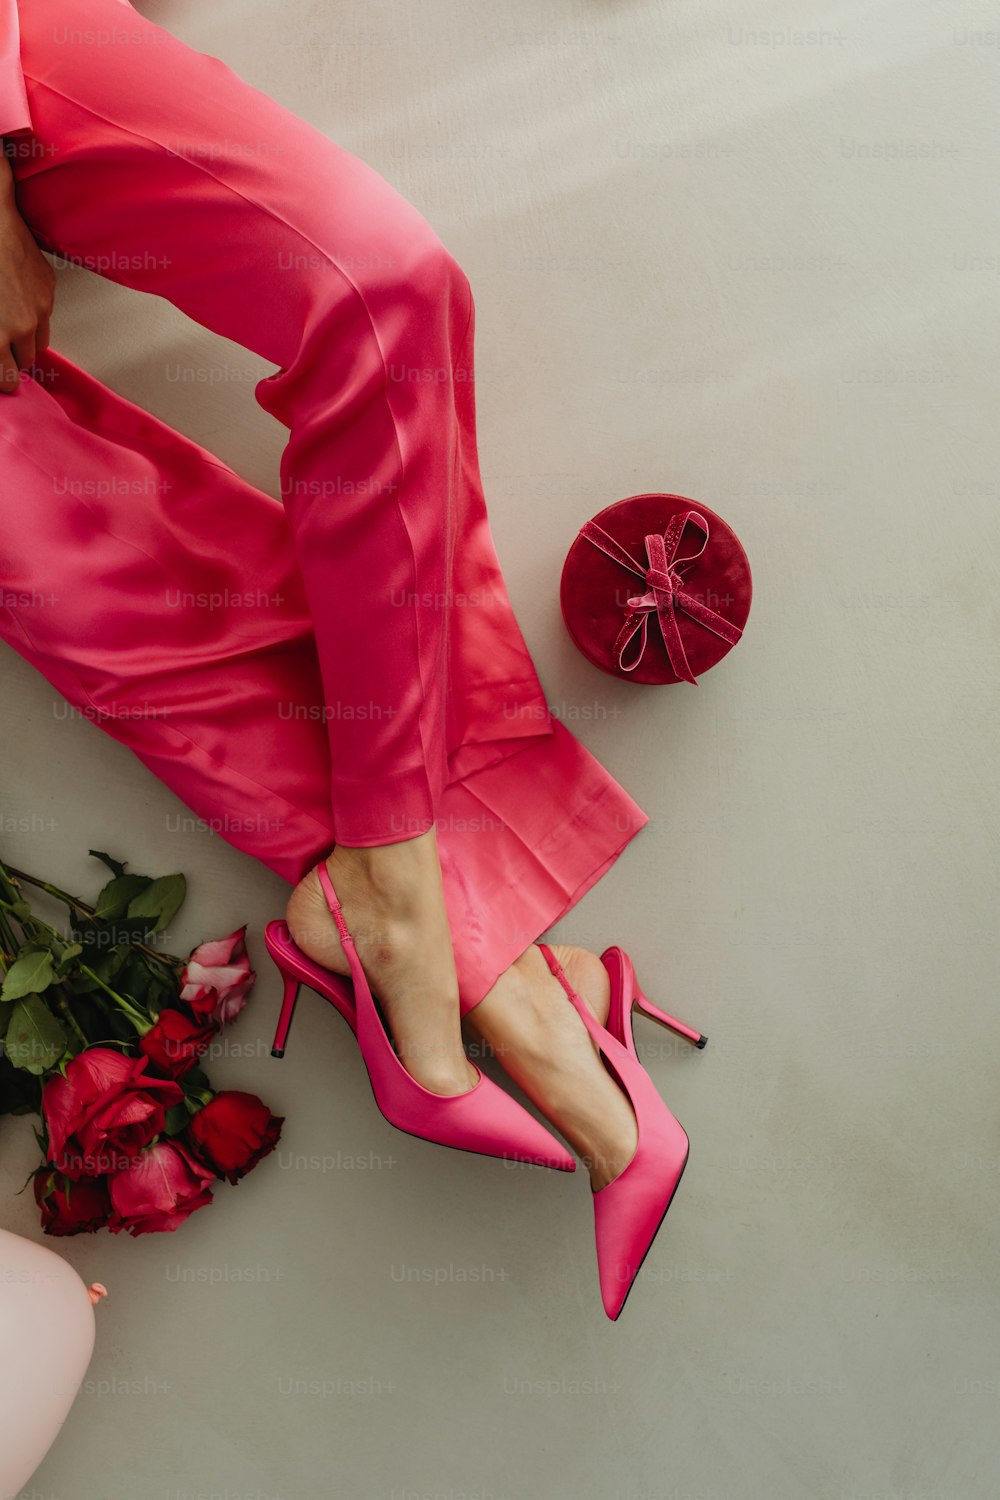 Piedi di una donna in scarpe rosa accanto a un mazzo di rose